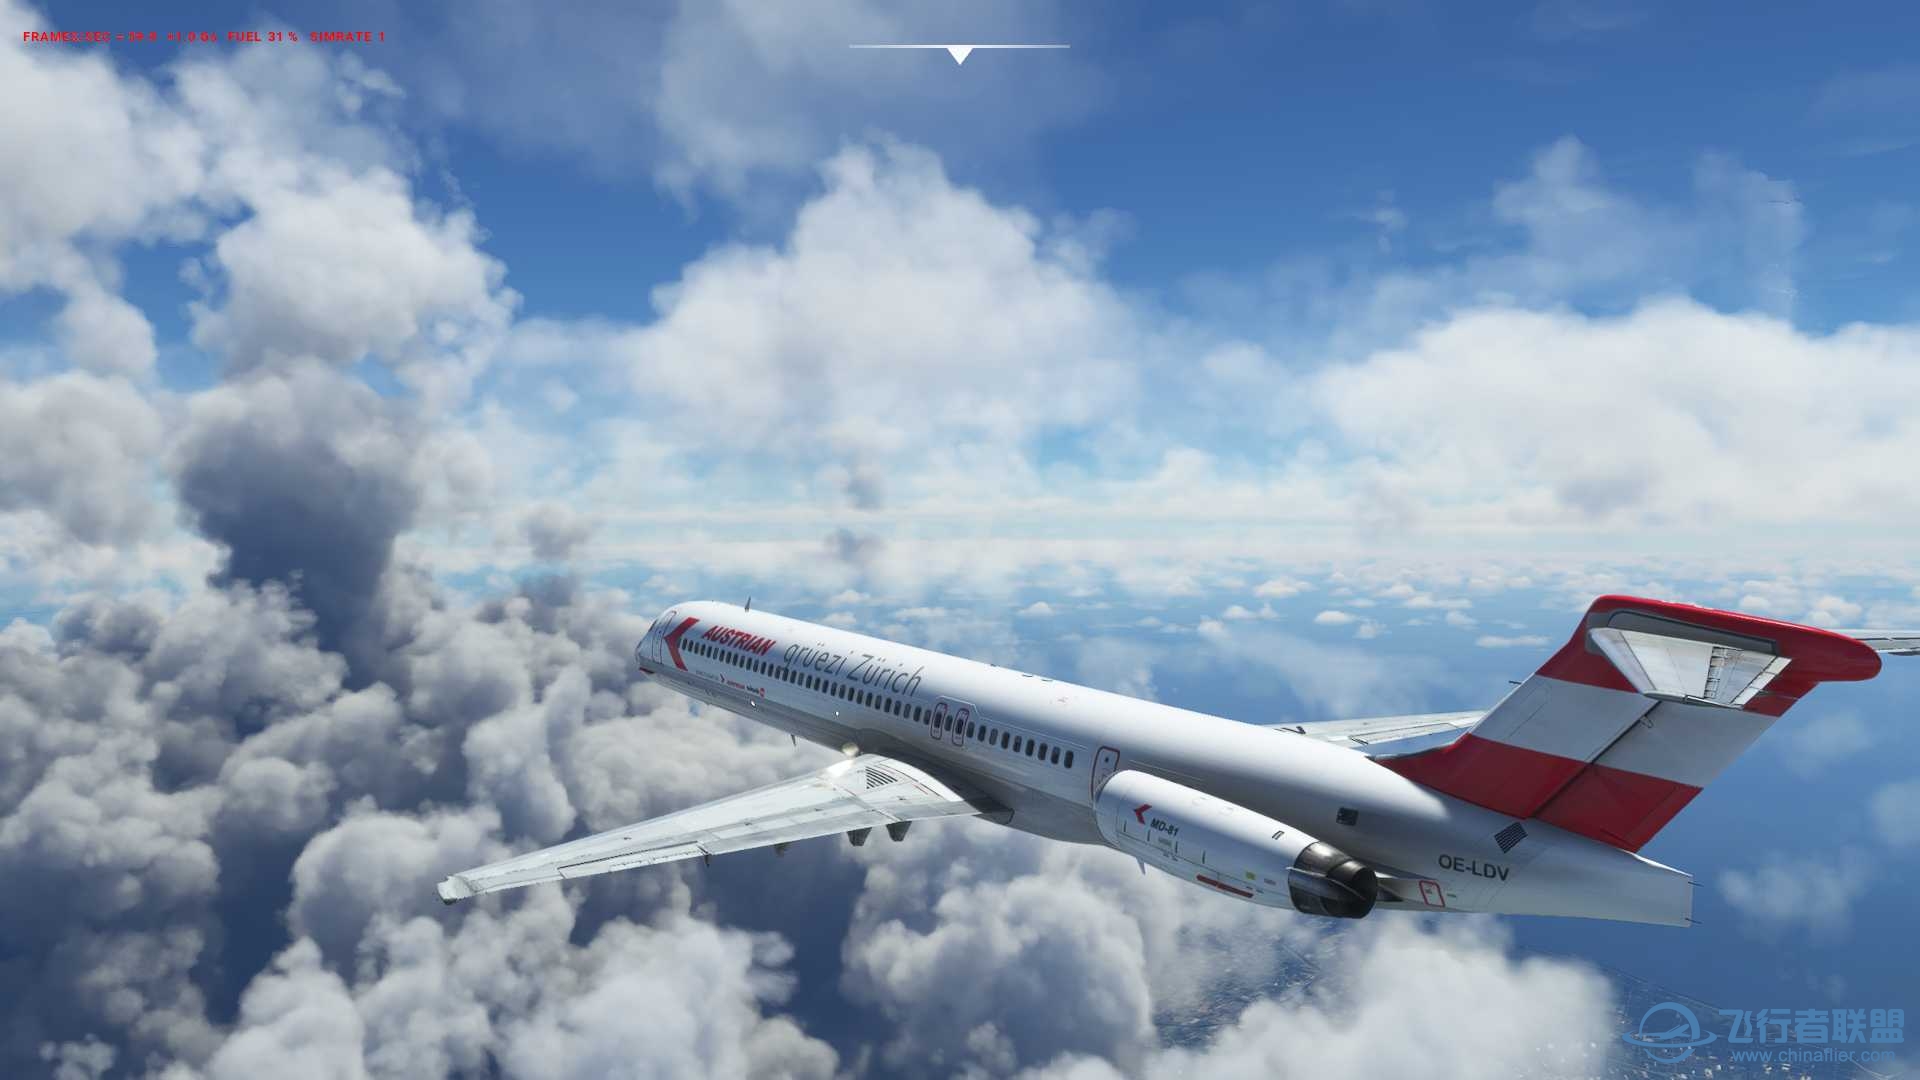 MD-82終於飛上天了...-3586 